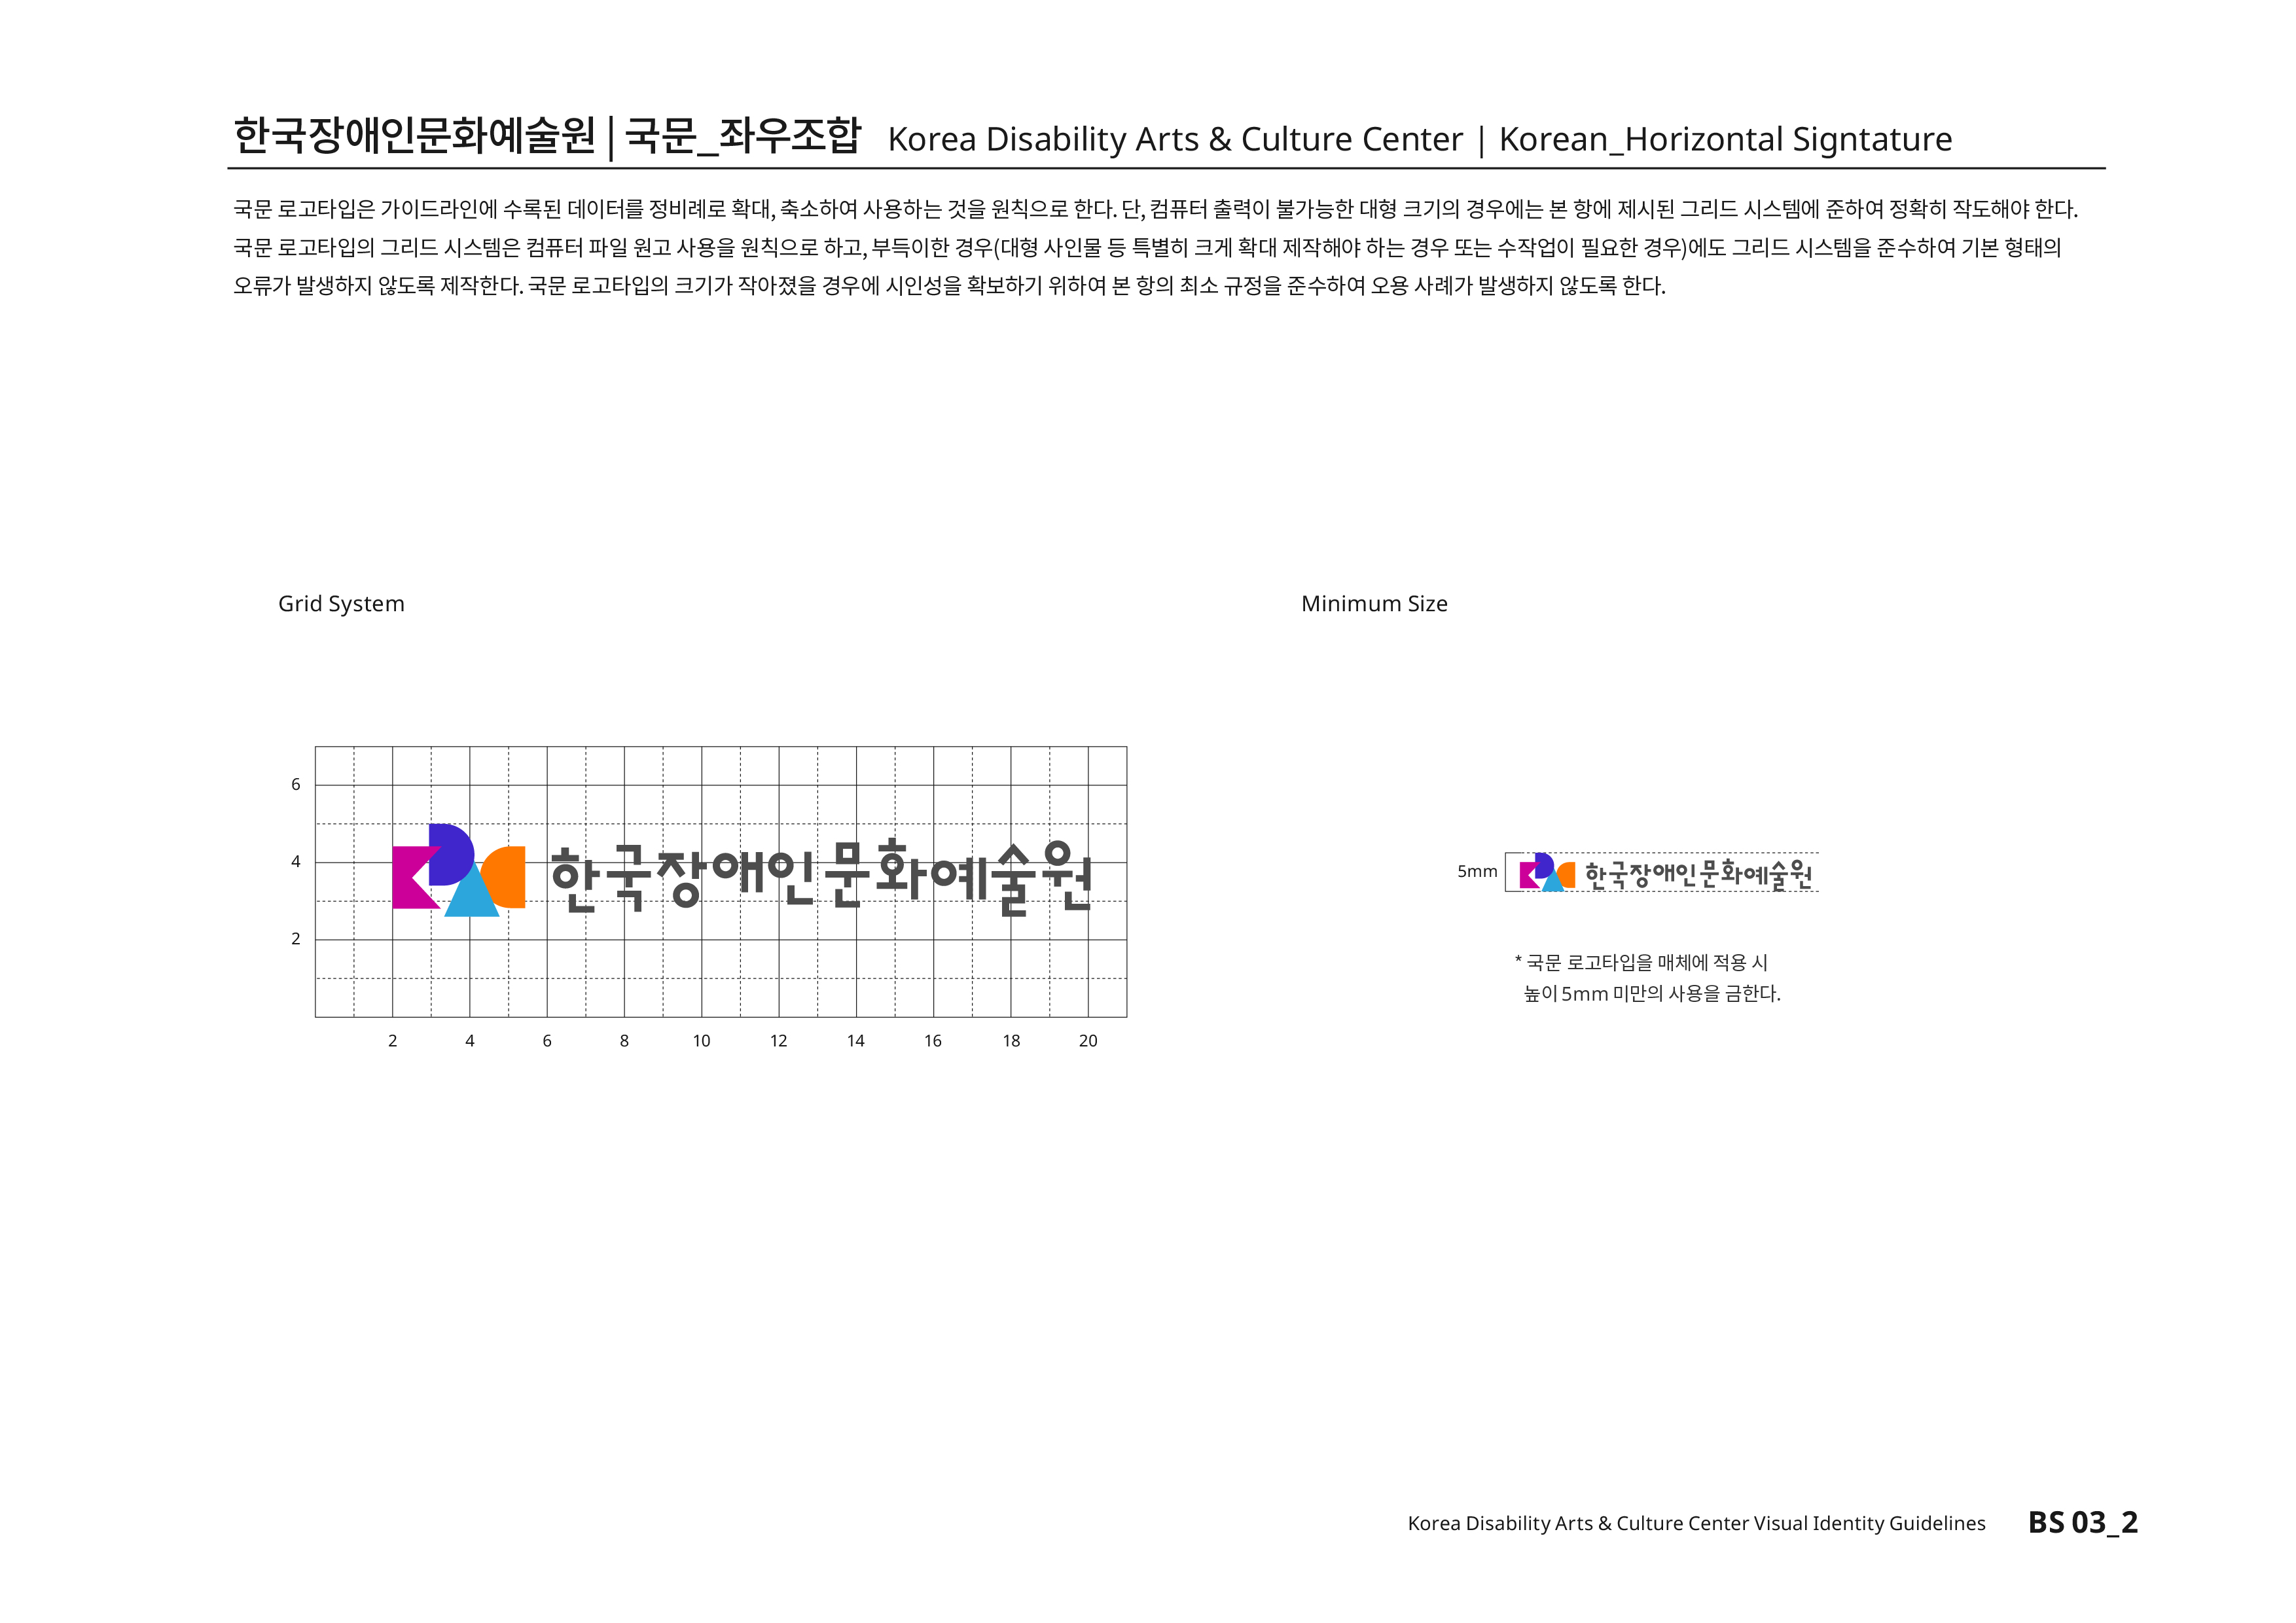 한국장애인문화예술원|국문_좌우조합 Korea Disability Arts & Culture Center | Korean_Horizontal Signtature 국문 로고타입은 가이드라인에 수록된 데이터를 정비례로 확대,축소하여 사용하는 것을 원칙으로 한다. 단, 컴퓨터 출력이 불가능한 대형 크기의 경우에는 본 항에 제시된 그리드 시스템에 준하여 정확히 작도해야 한다.국문 로고타입의 그리드 시스템은 컴퓨터 파일 원고 사용을 원칙으로 하고,부득이한 경우(대형 사인물 등 특별히 크게 확대 제작해야 하는 경우 또는 수작업이 필요한 경우)에도 그리드 시스템을 준수하여 기본 형태의 오류가 발생하지 않도록 제작한다.국문 로고타입의 크기가 작아졌을 경우에 시인성을 확보하기 위하여 본 항의 최소 규정을 준수하여 오용 사례가 발생하지 않도록 한다.